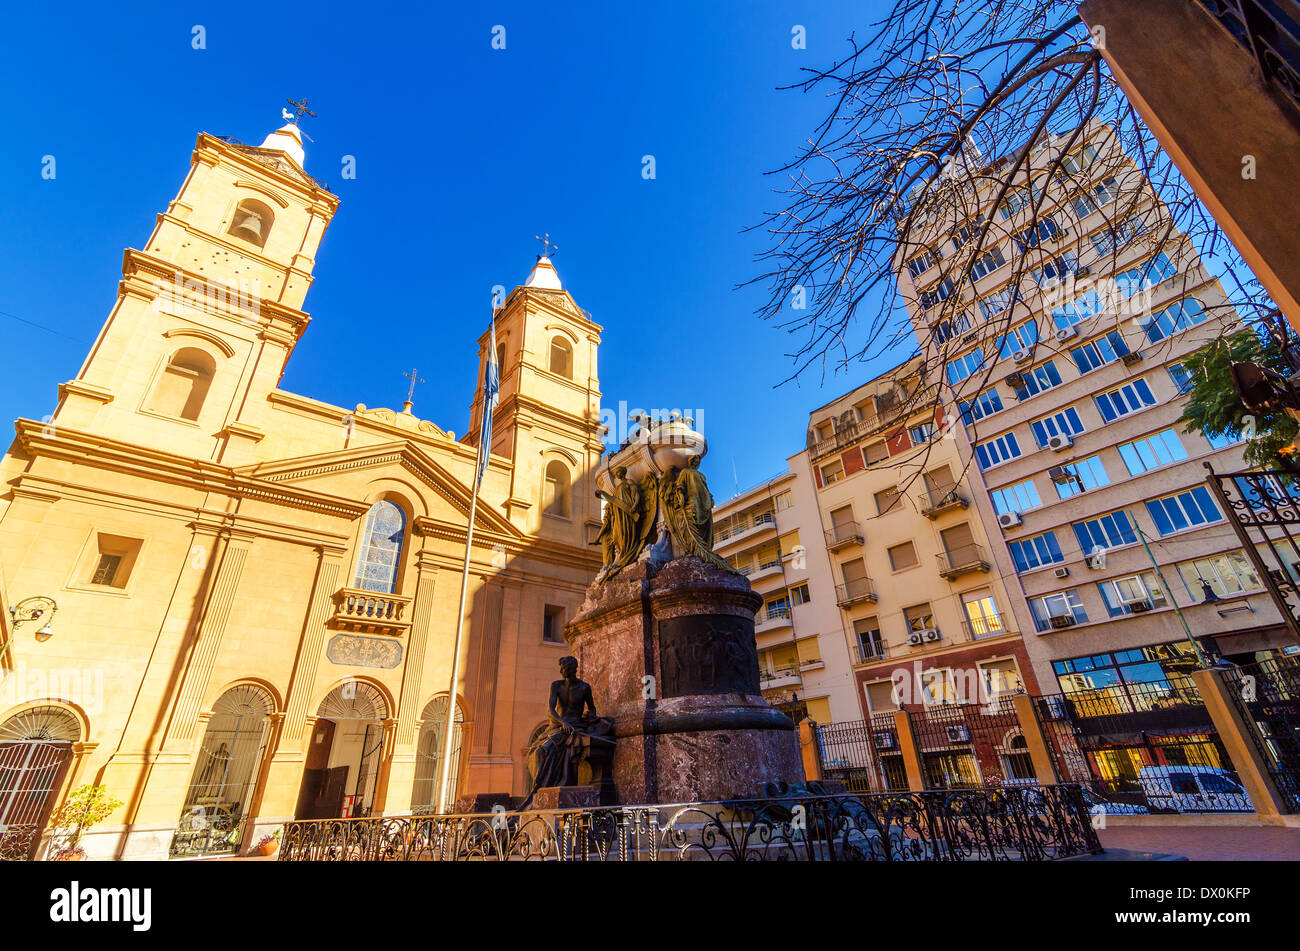 Santo Domingo-Kirche und Kloster im Stadtteil San Telmo in Buenos Aires, Argentinien Stockfoto